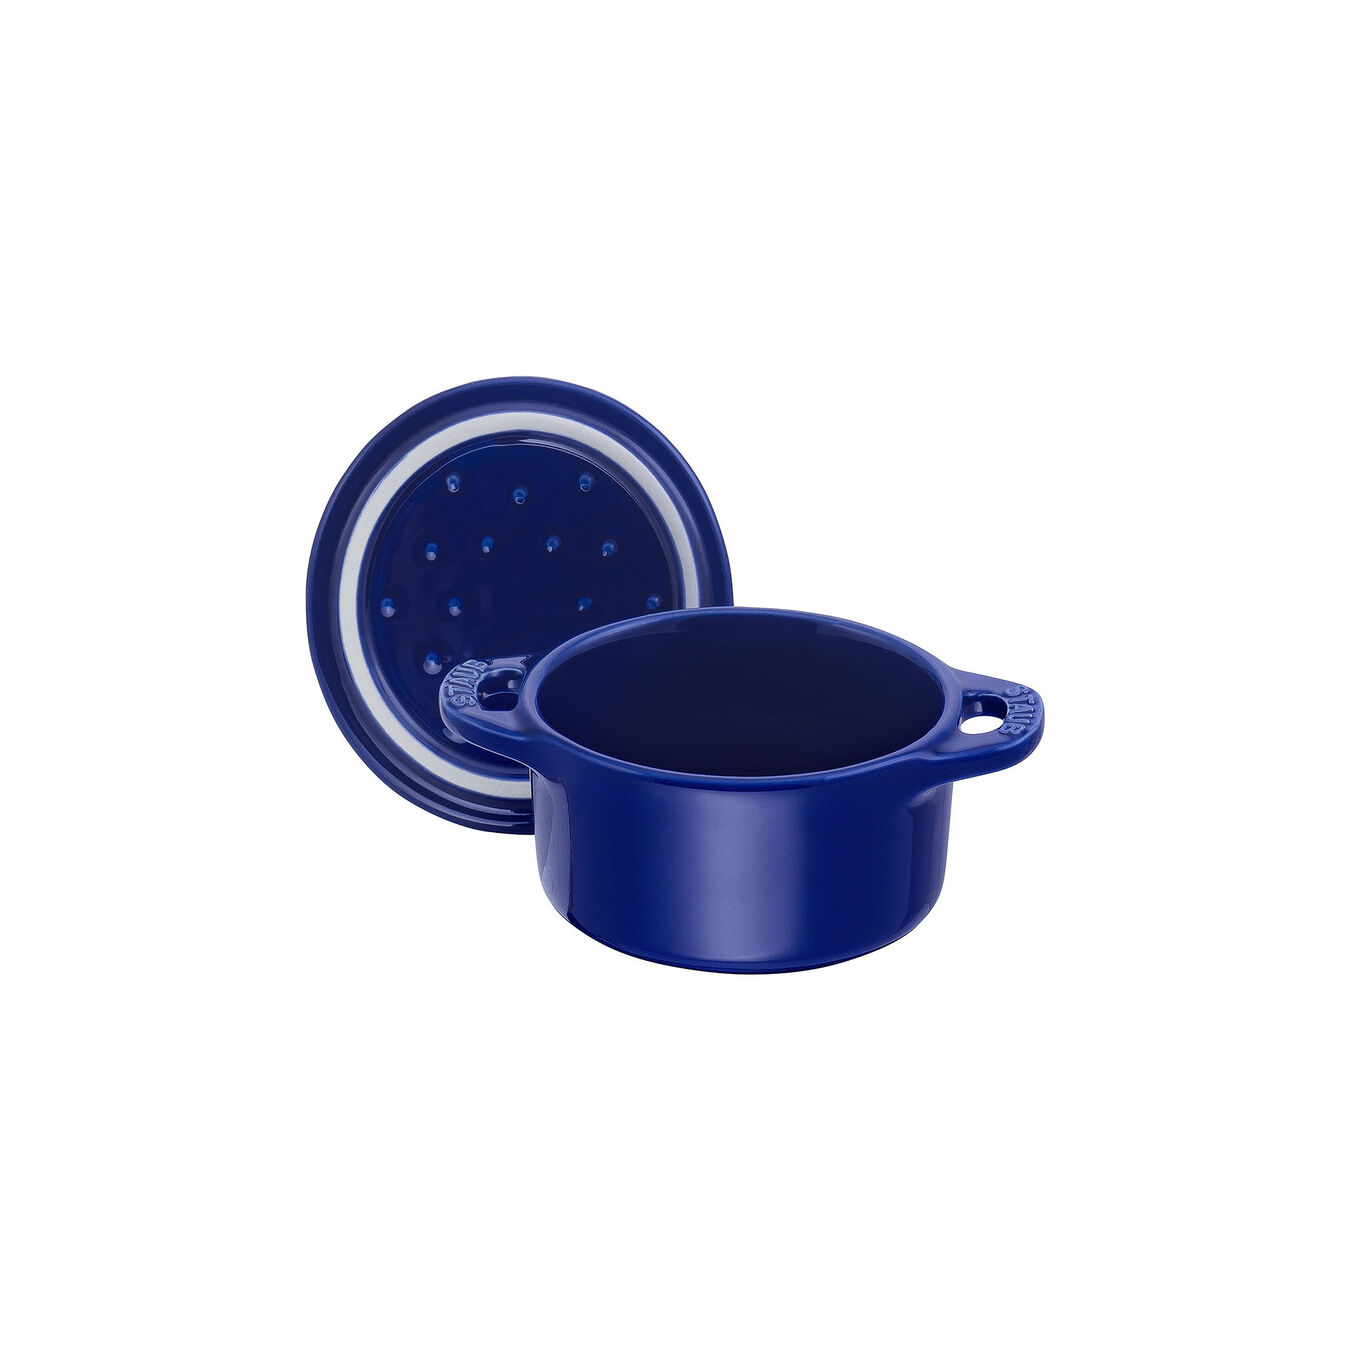 10 cm round Ceramic Mini Cocotte dark-blue,,large 6